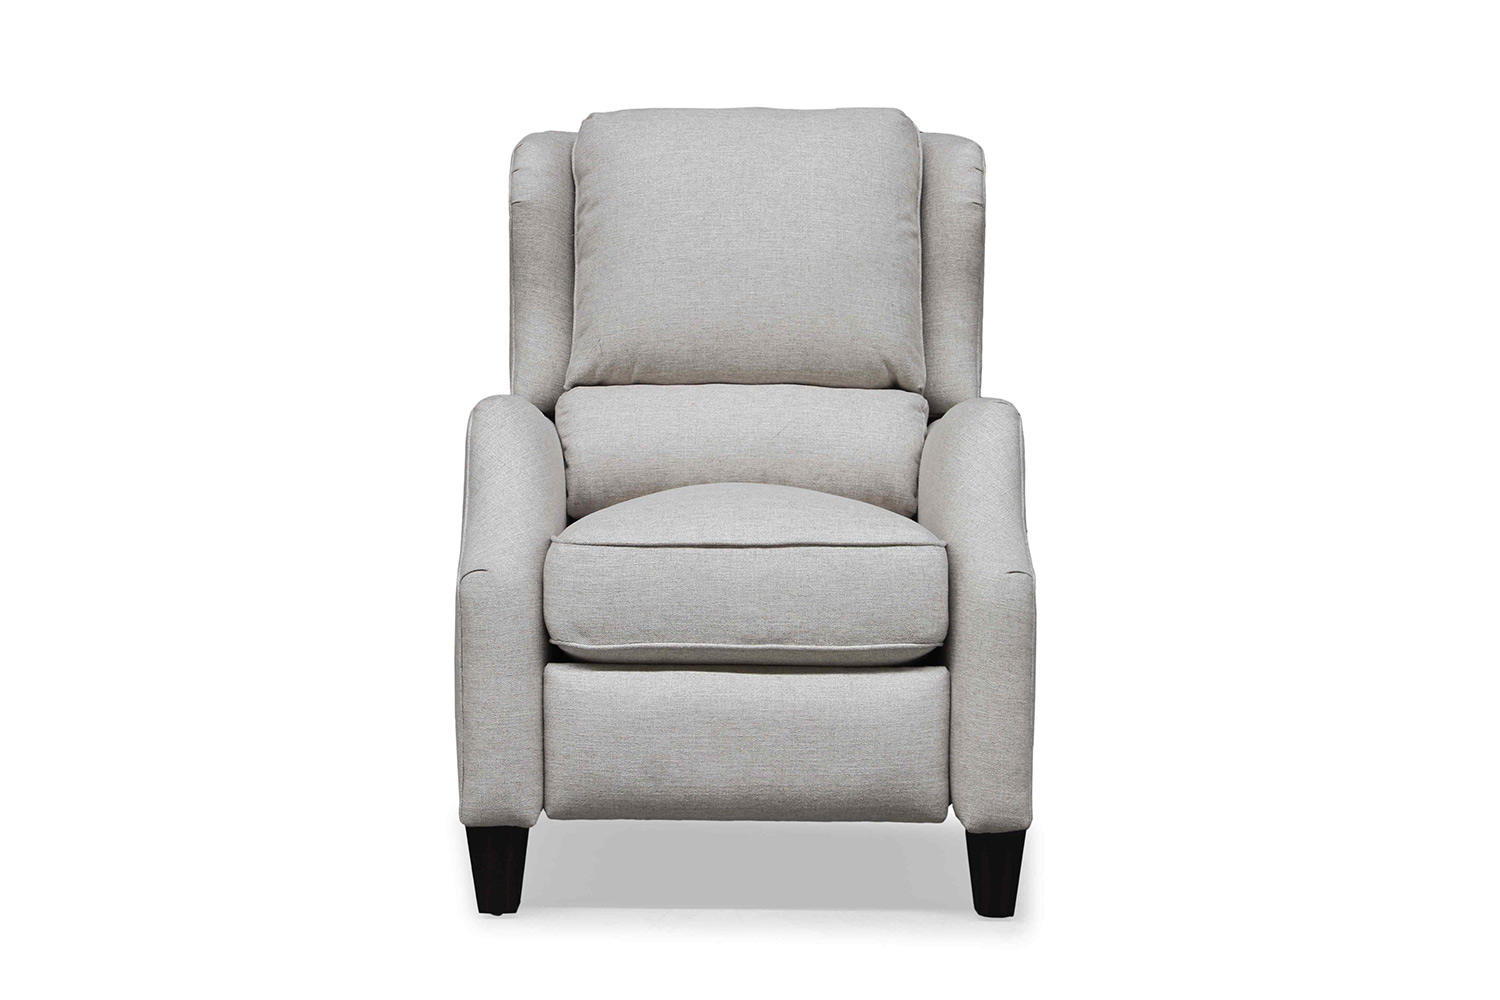 Barcalounger Berkeley Recliner Chair - Linen fabric